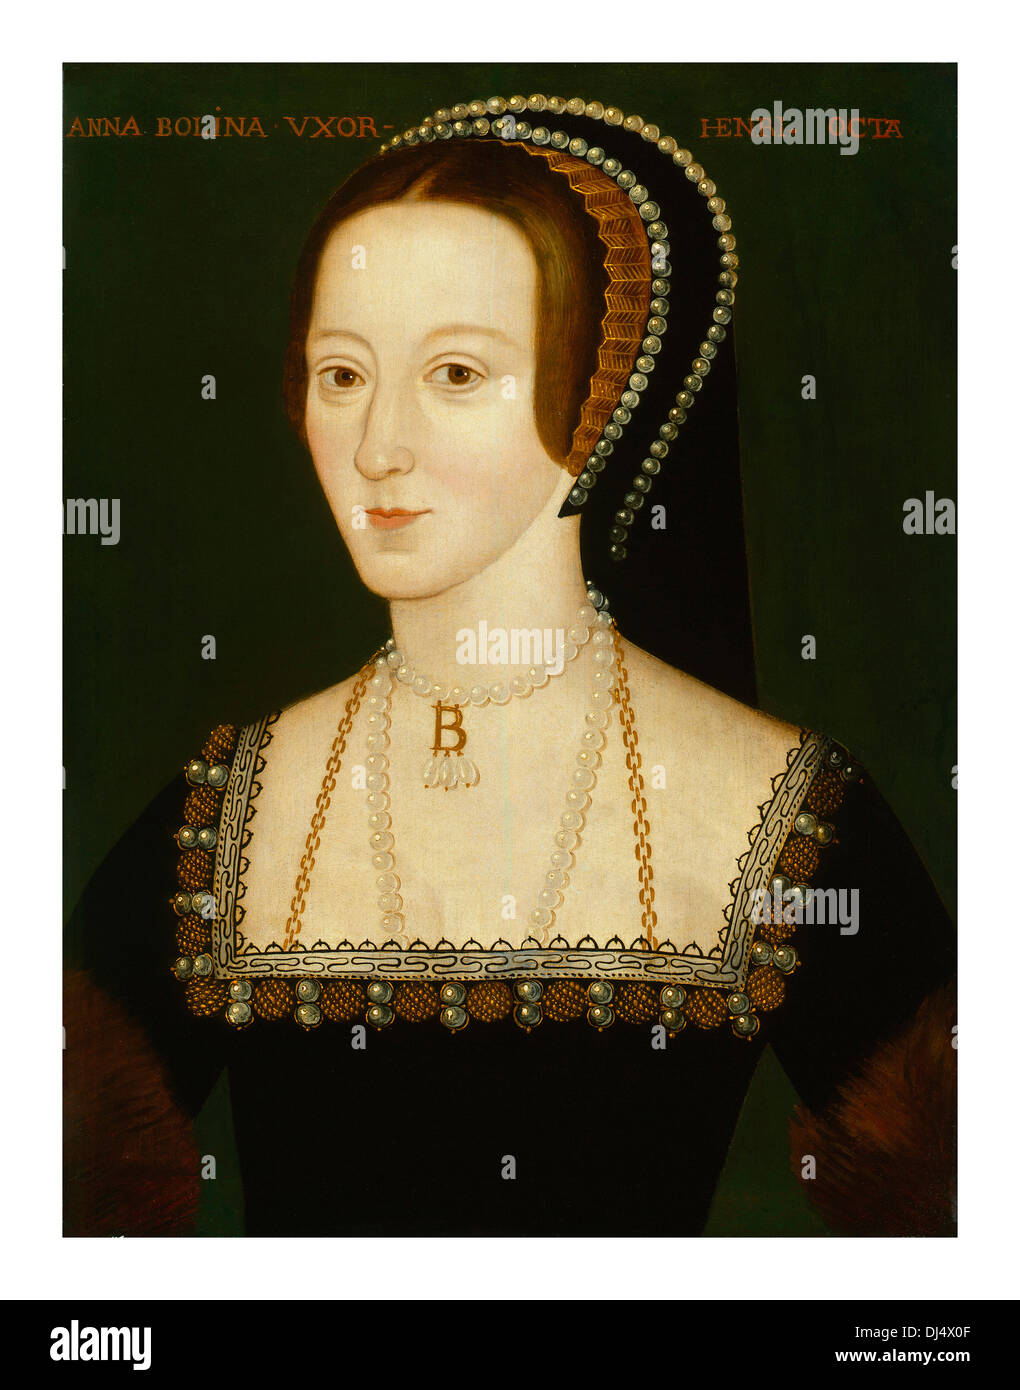 Retrato de Anne Boleyn en aceites de la artista maestra del siglo 16th, retrato isabelino, posiblemente derivado de un original perdido de 1533–36 (alt 2F9G9P2) Foto de stock